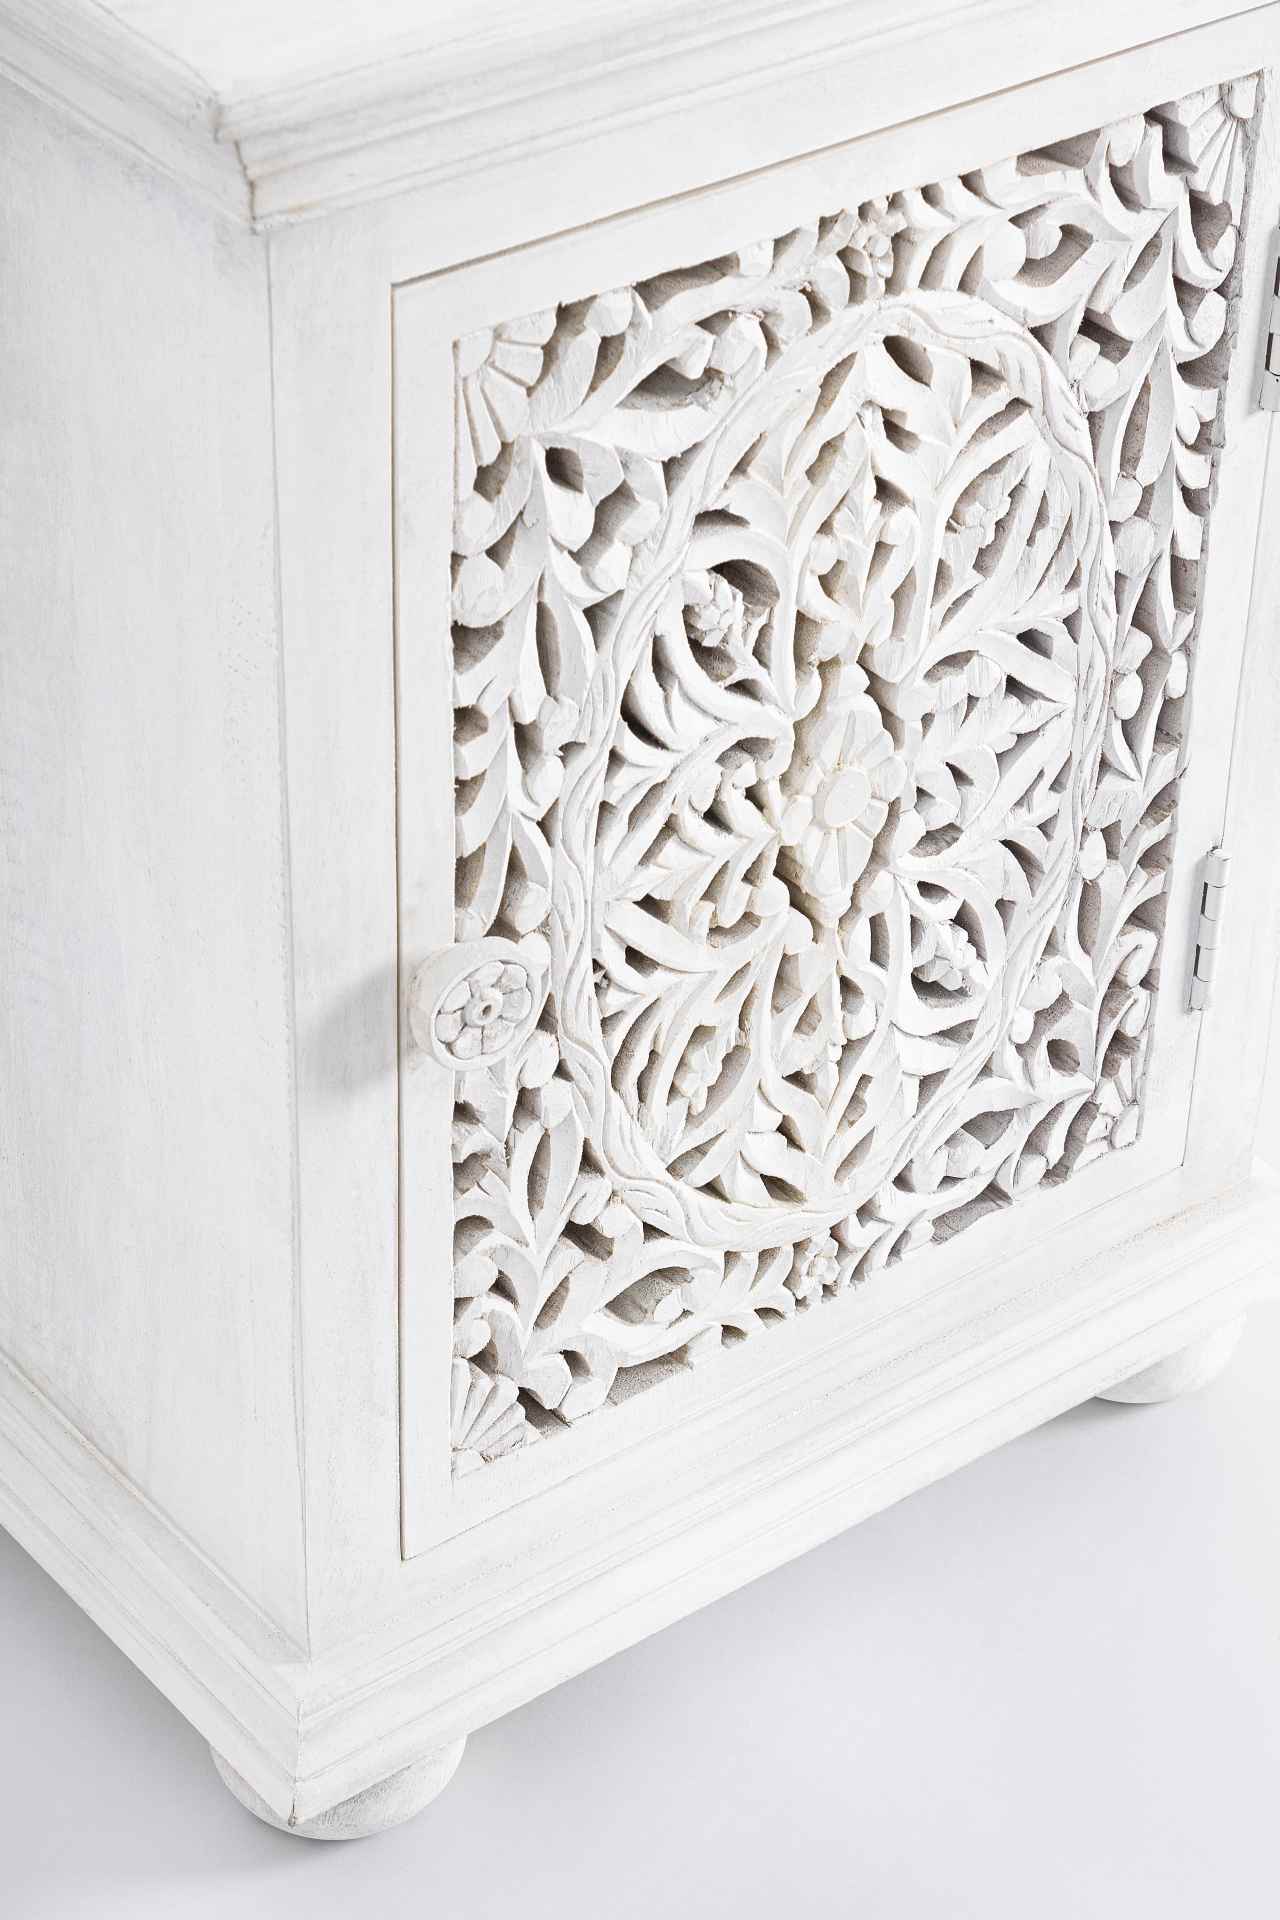 Der Nachttisch Alina überzeugt mit seinem klassischen Design. Gefertigt wurde er aus Mangoholz, welches einen weißen Farbton besitzt. Das Gestell ist auch aus Mangoholz. Der Nachttisch verfügt über eine Tür. Die Breite beträgt 50 cm.